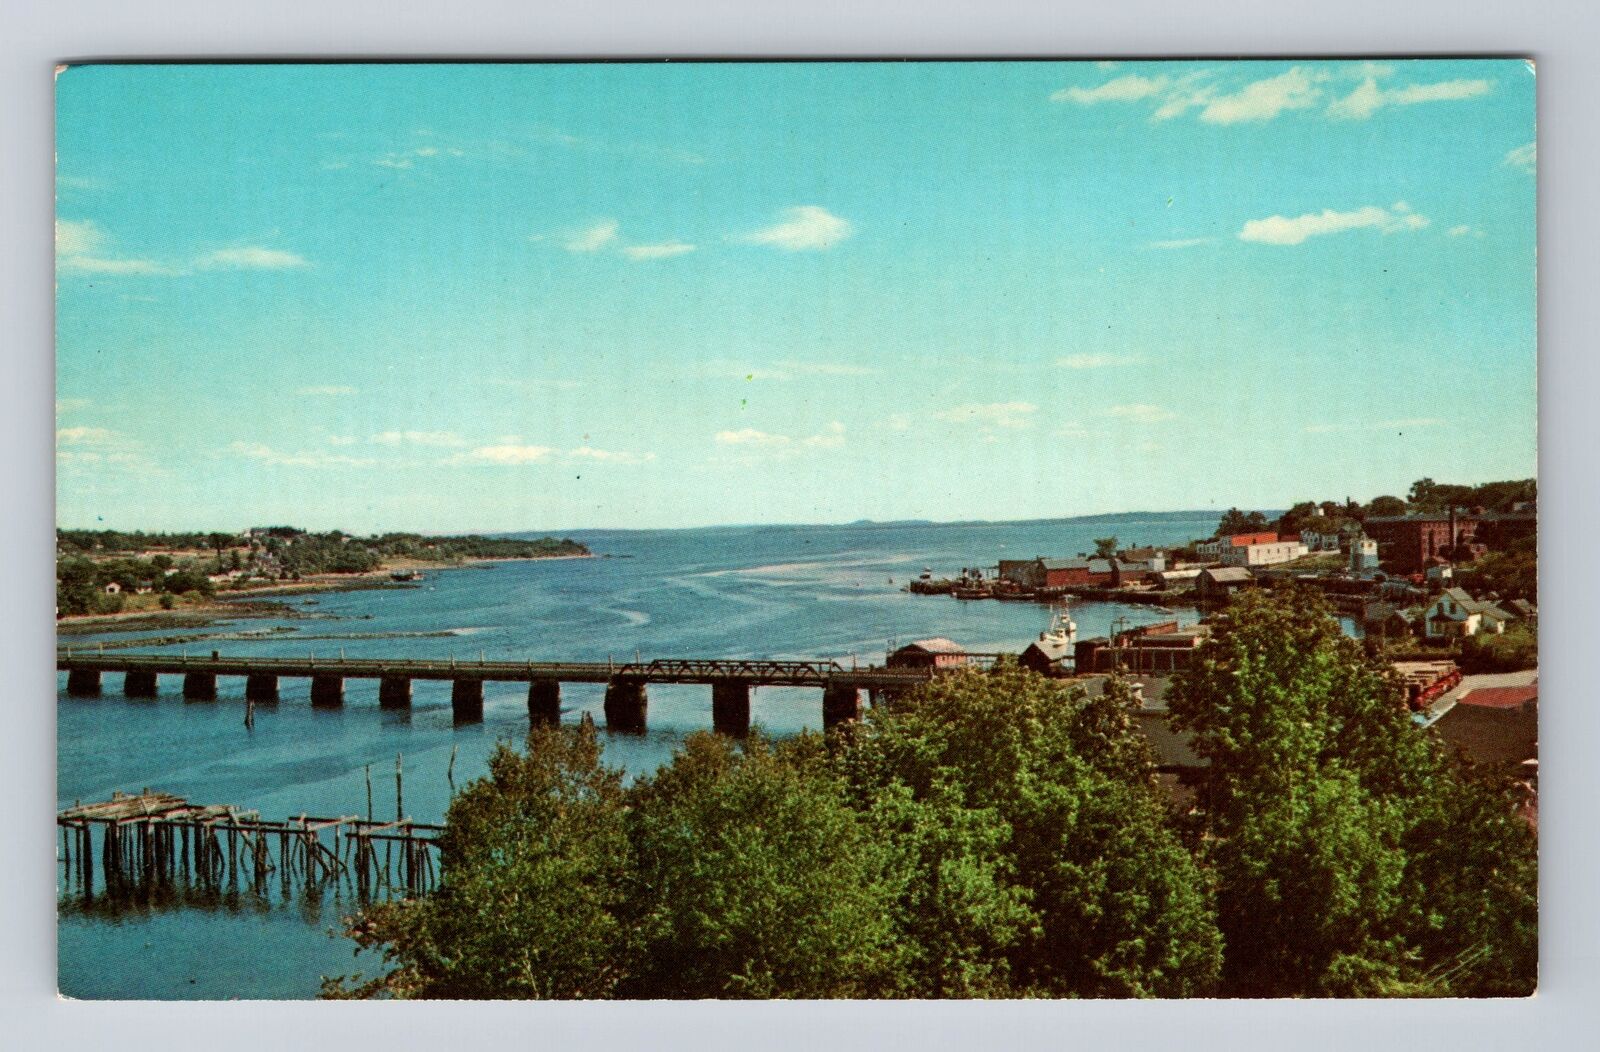 Belfast ME-Maine, Shore Line Passagassawakeag River, Antique, Vintage Postcard